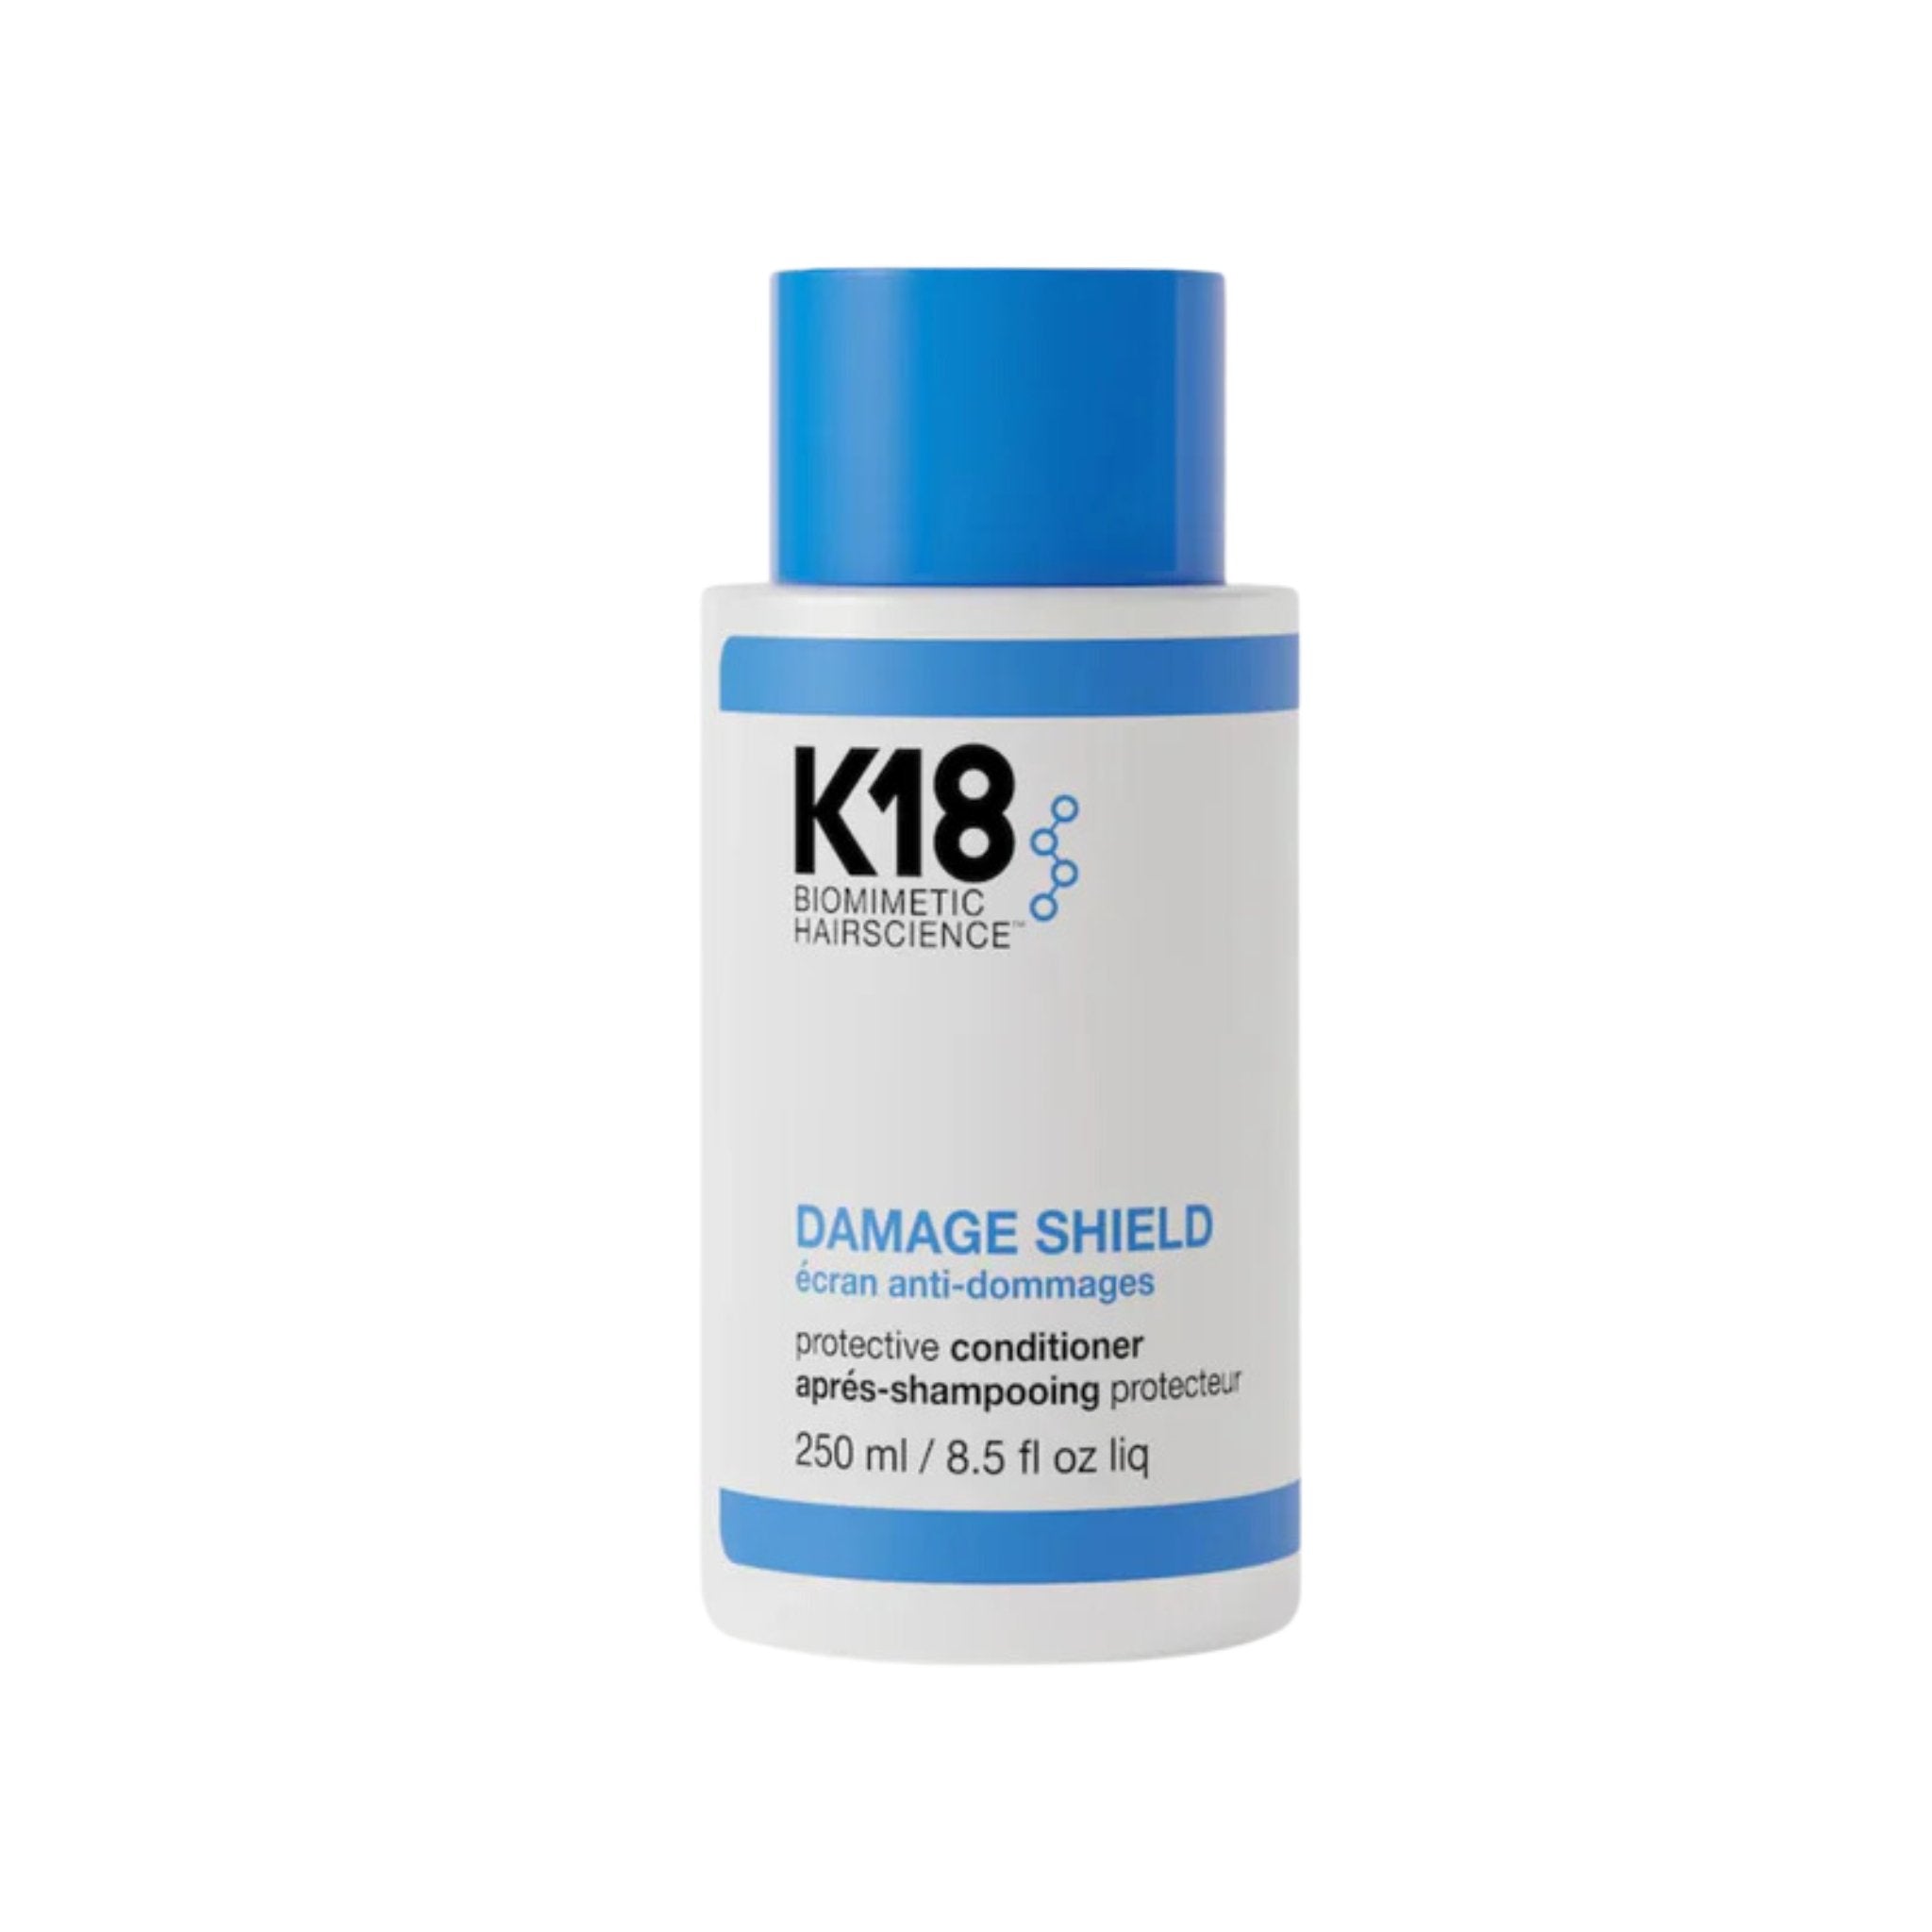 K18. Après-Shampoing Damage Shield - 250 ml - Concept C. Shop